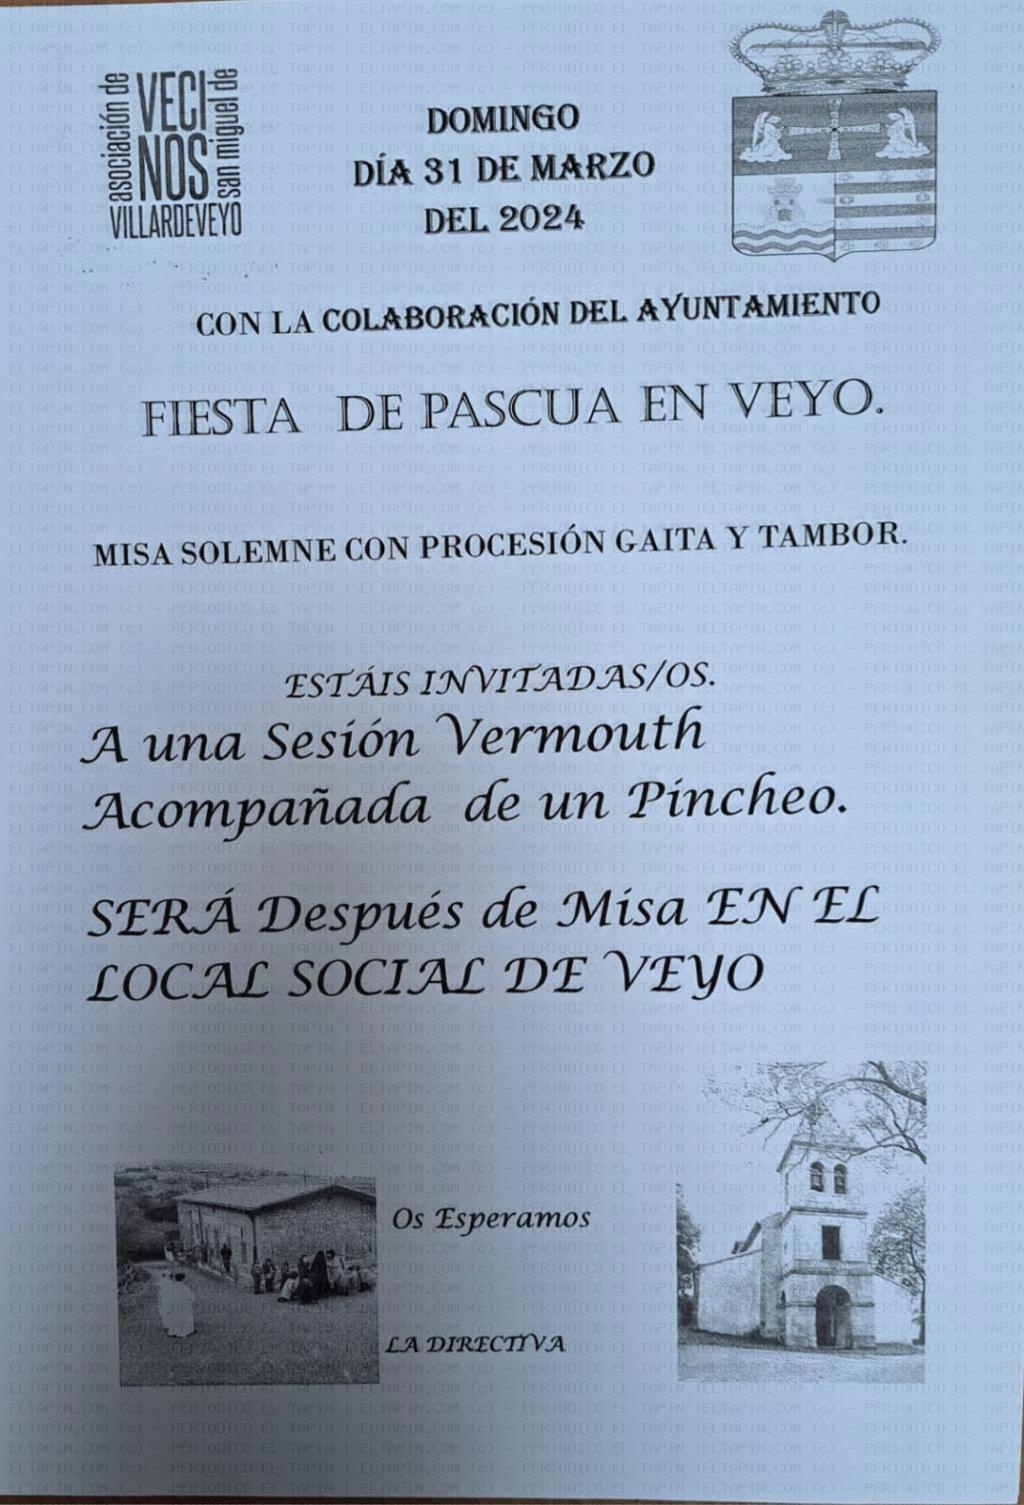 El Tapin - La Asociación de Vecinos de San Miguel de Villardeveyo organiza una sesión vermú por la fiesta de Pascua en Veyo 